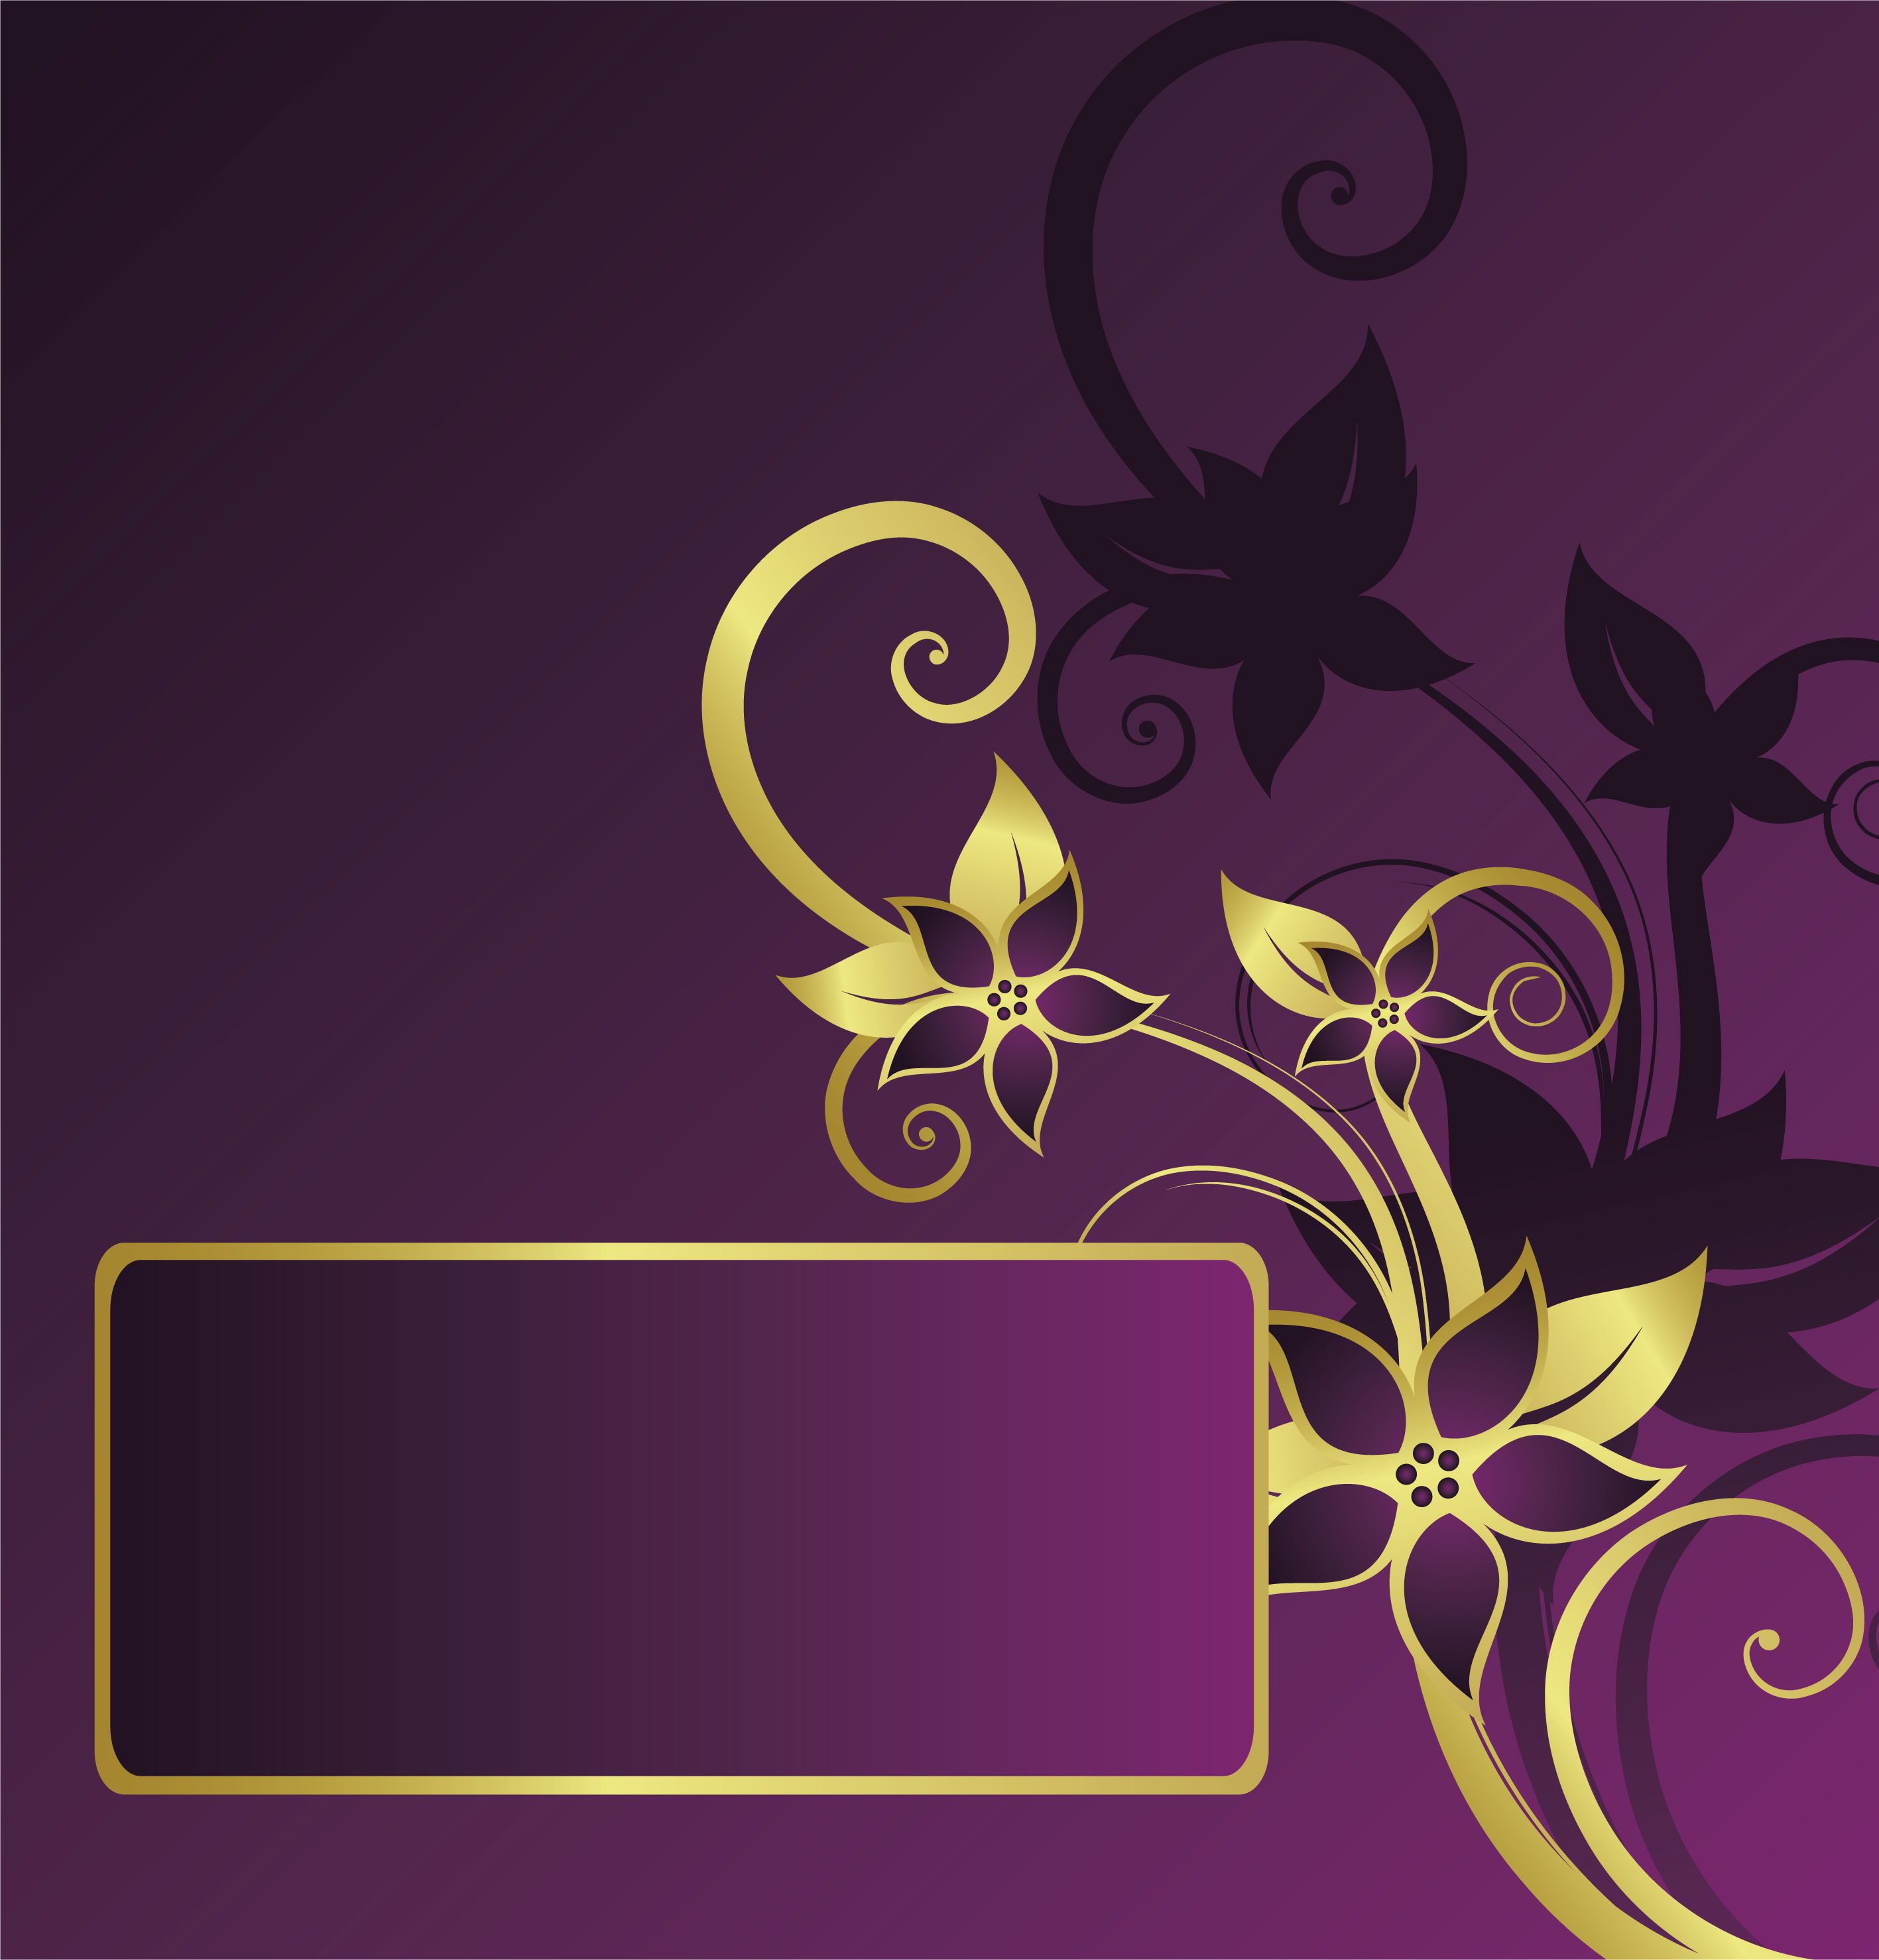 壁紙 背景イラスト 花のフレーム 外枠 No 223 紫 ゴールドフレーム